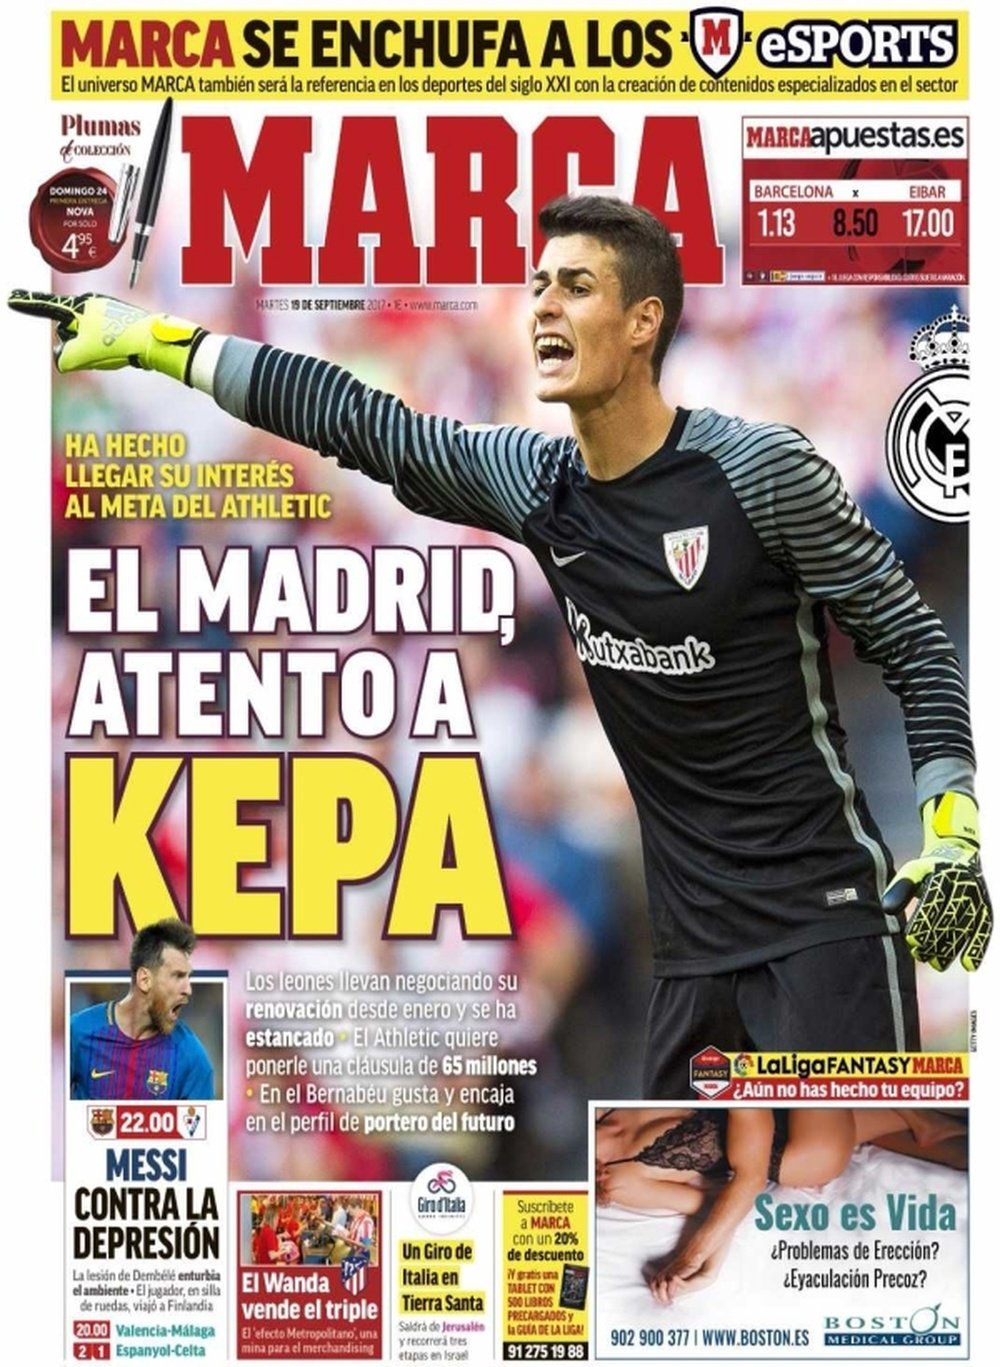 'Marca' destaca el interés del Madrid por Kepa en su portada. Marca